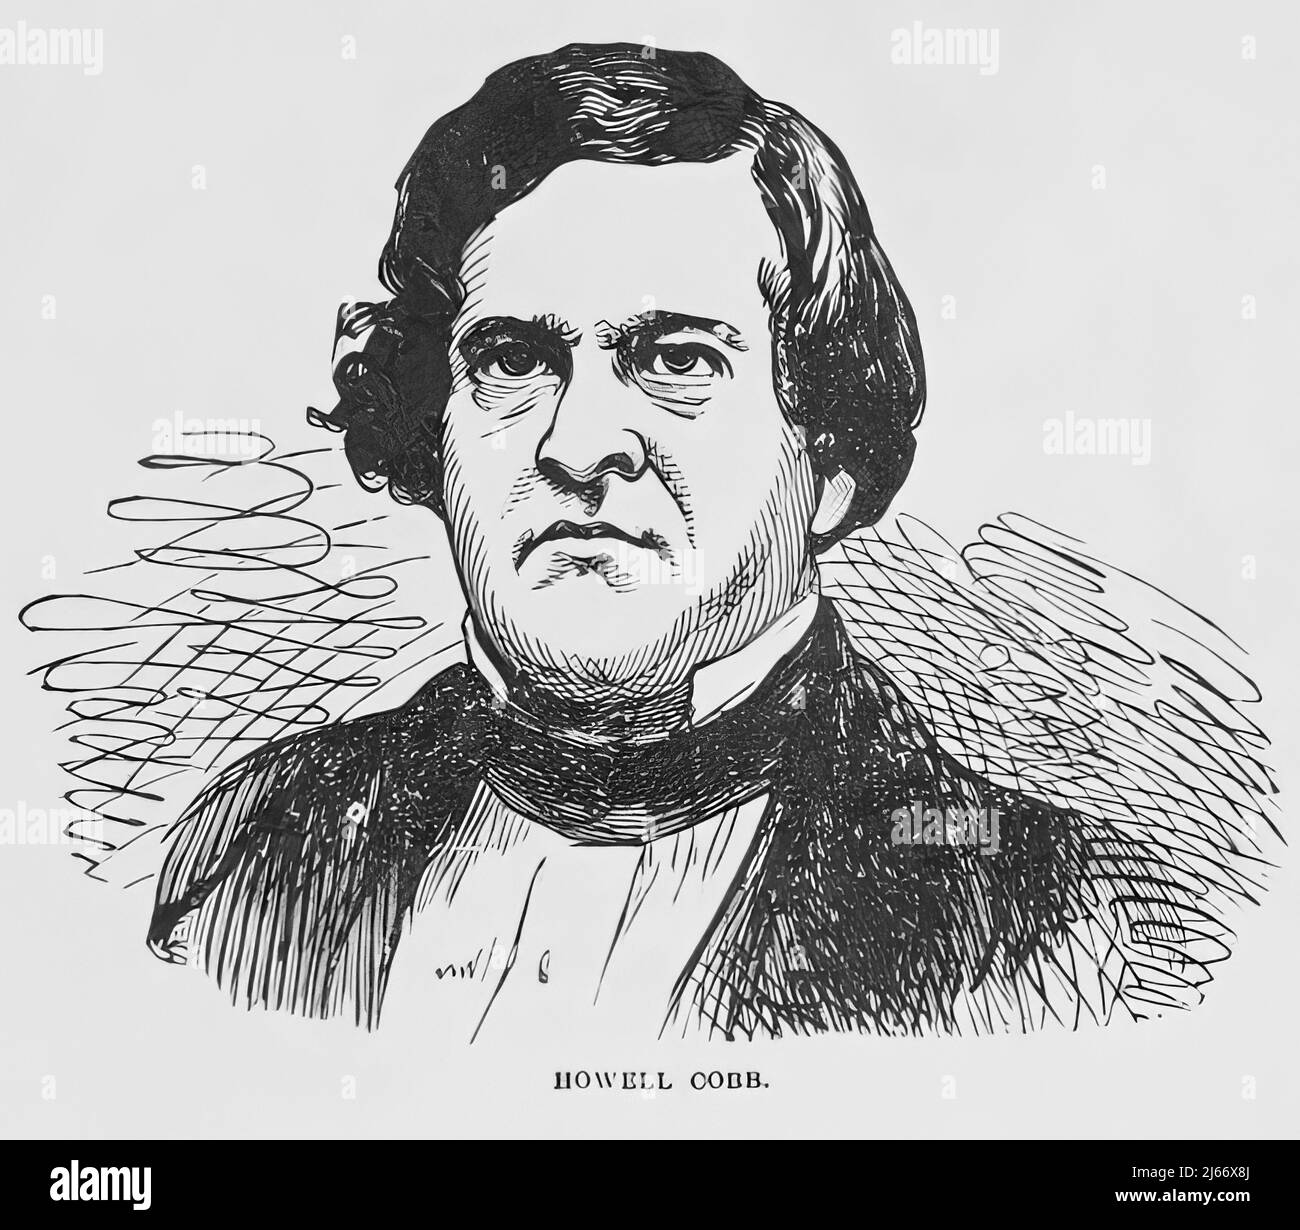 Portrait de Howell Cobb, président du Congrès provisoire des États confédérés pendant la guerre civile américaine. illustration du siècle 19th Banque D'Images